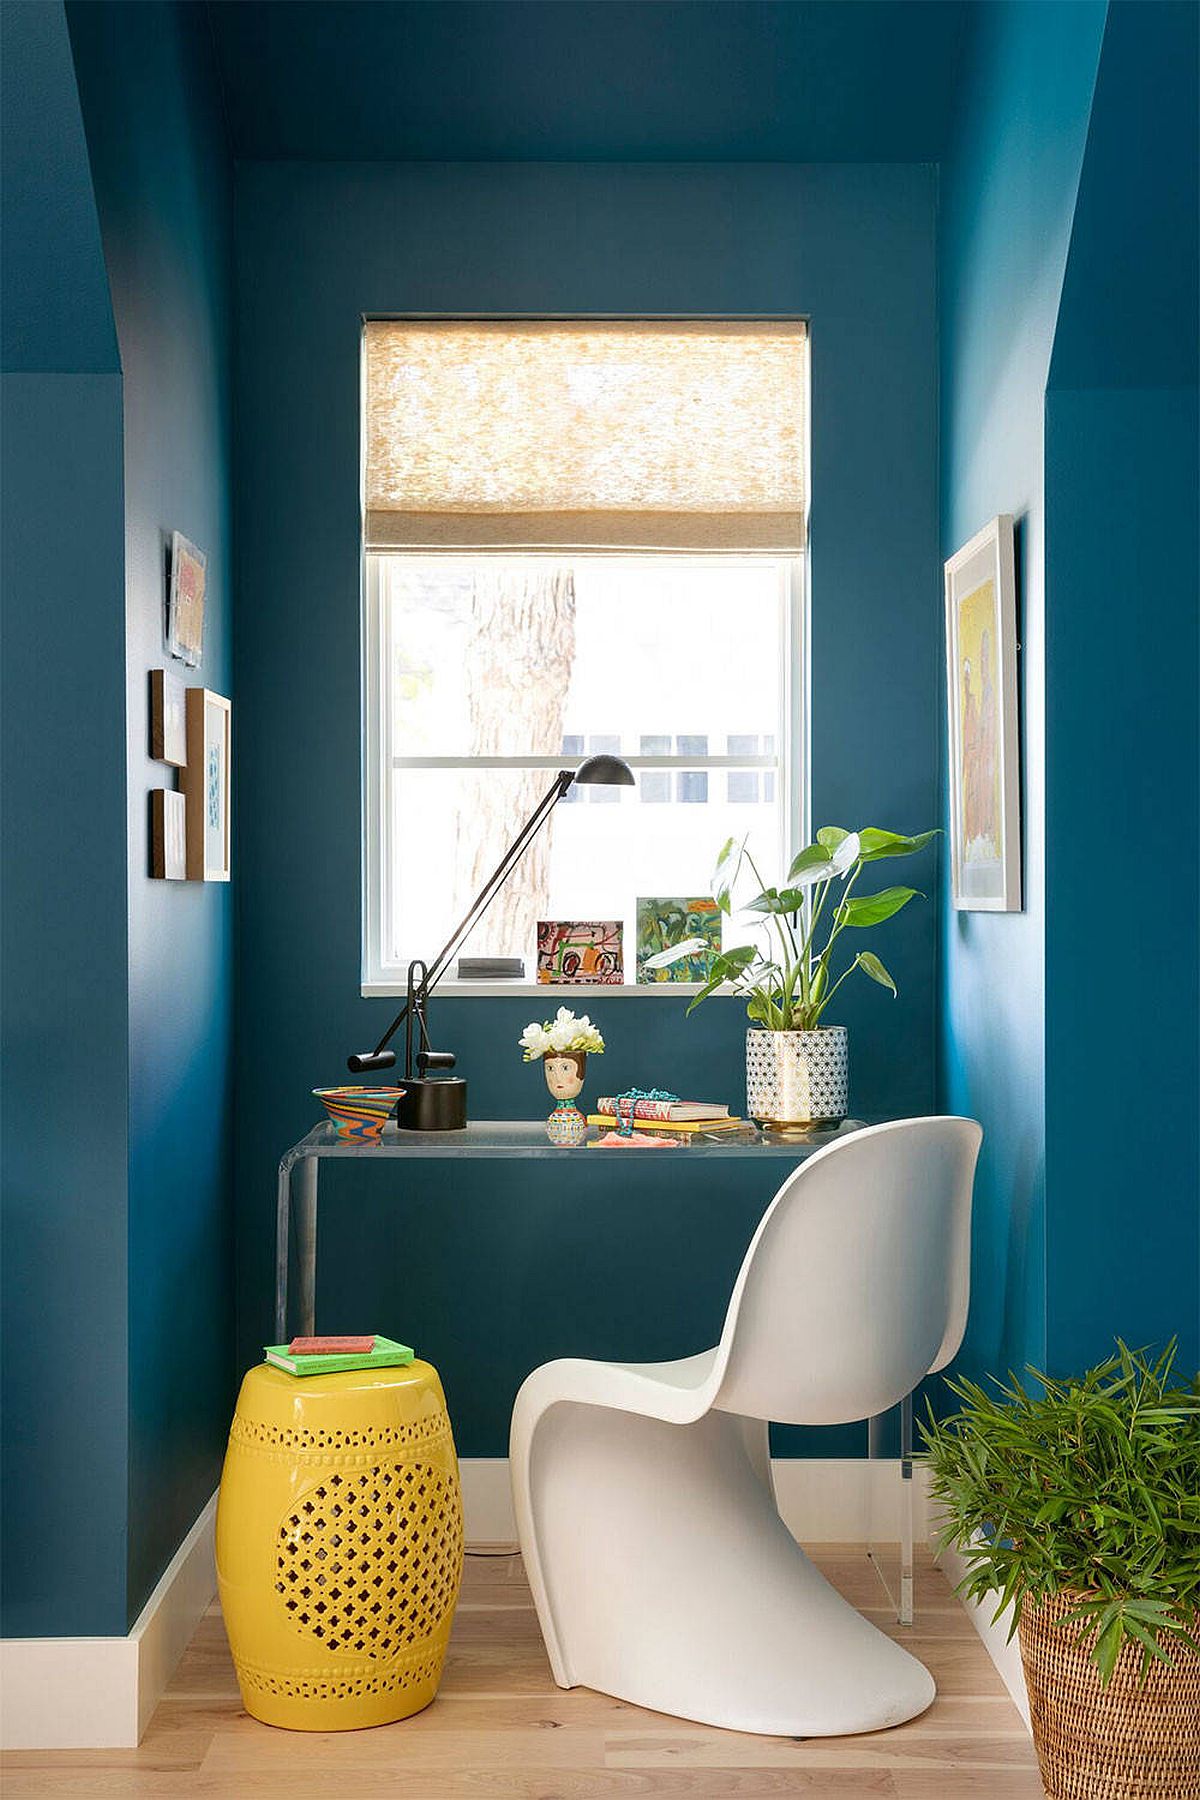 Tận dụng tối đa nguồn sáng tự nhiên qua ô cửa nhỏ khiến góc làm việc màu xanh lam bừng sáng đầy cảm hứng, thêm vào chiếc ghế đôn màu vàng khiến không gian trở nên ấm áp hơn.